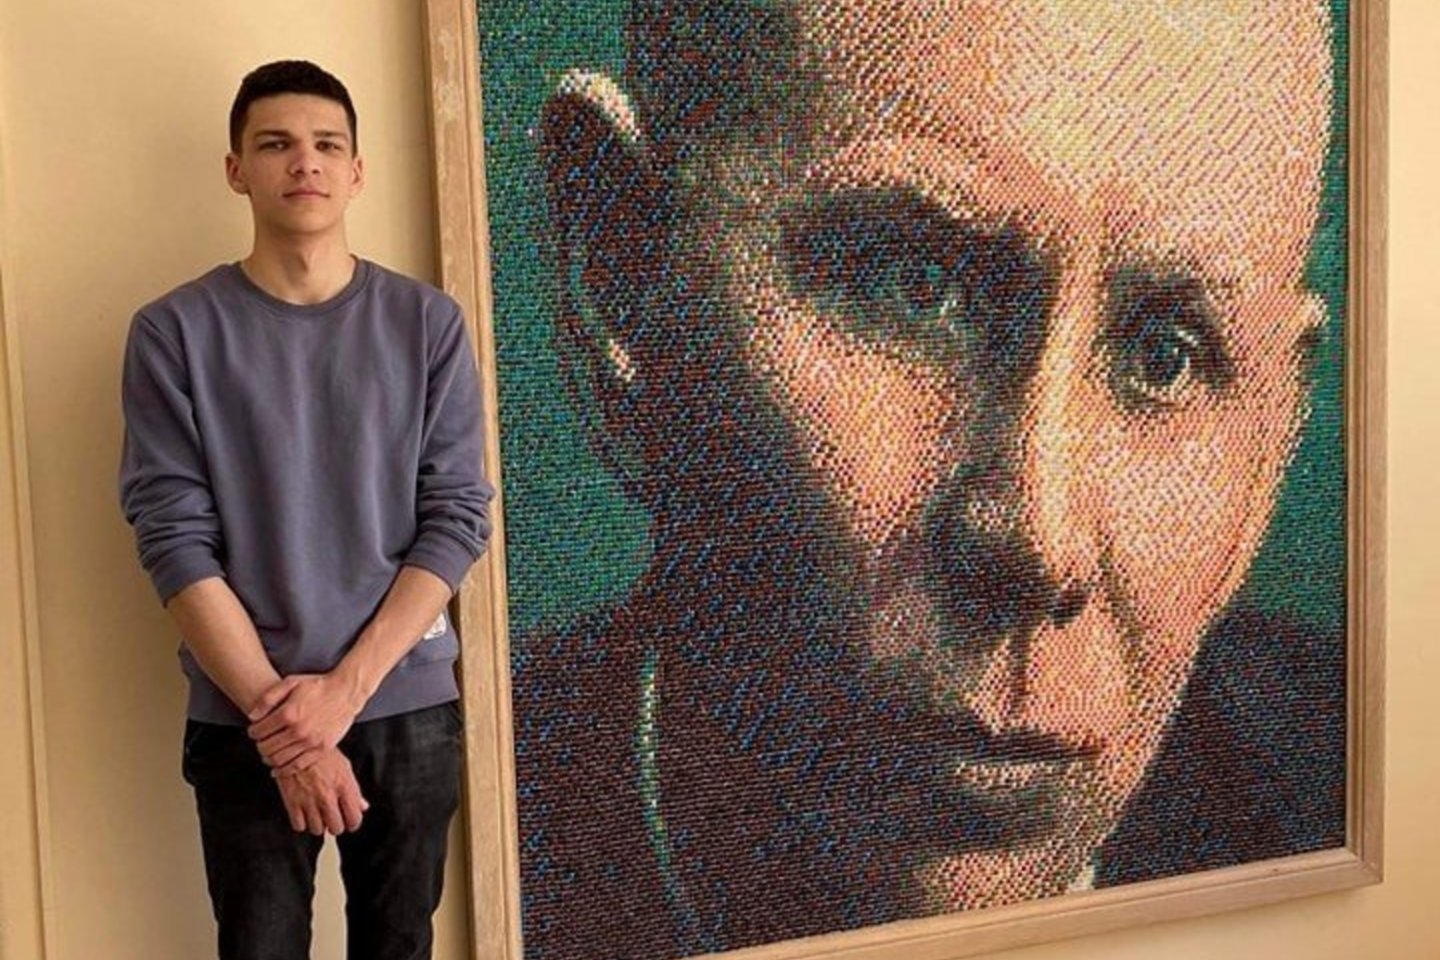  Abiturientas A.Raila J.Zikaro portretui-popieriaus lankstinių mozaikai sukurti skyrė per 430 valandų, užtat iš dailės egzamino gavo šimtuką.<br> A.Švelnos ir Nacionalinio M.K Čiurlionio muziejaus fondų nuotr.